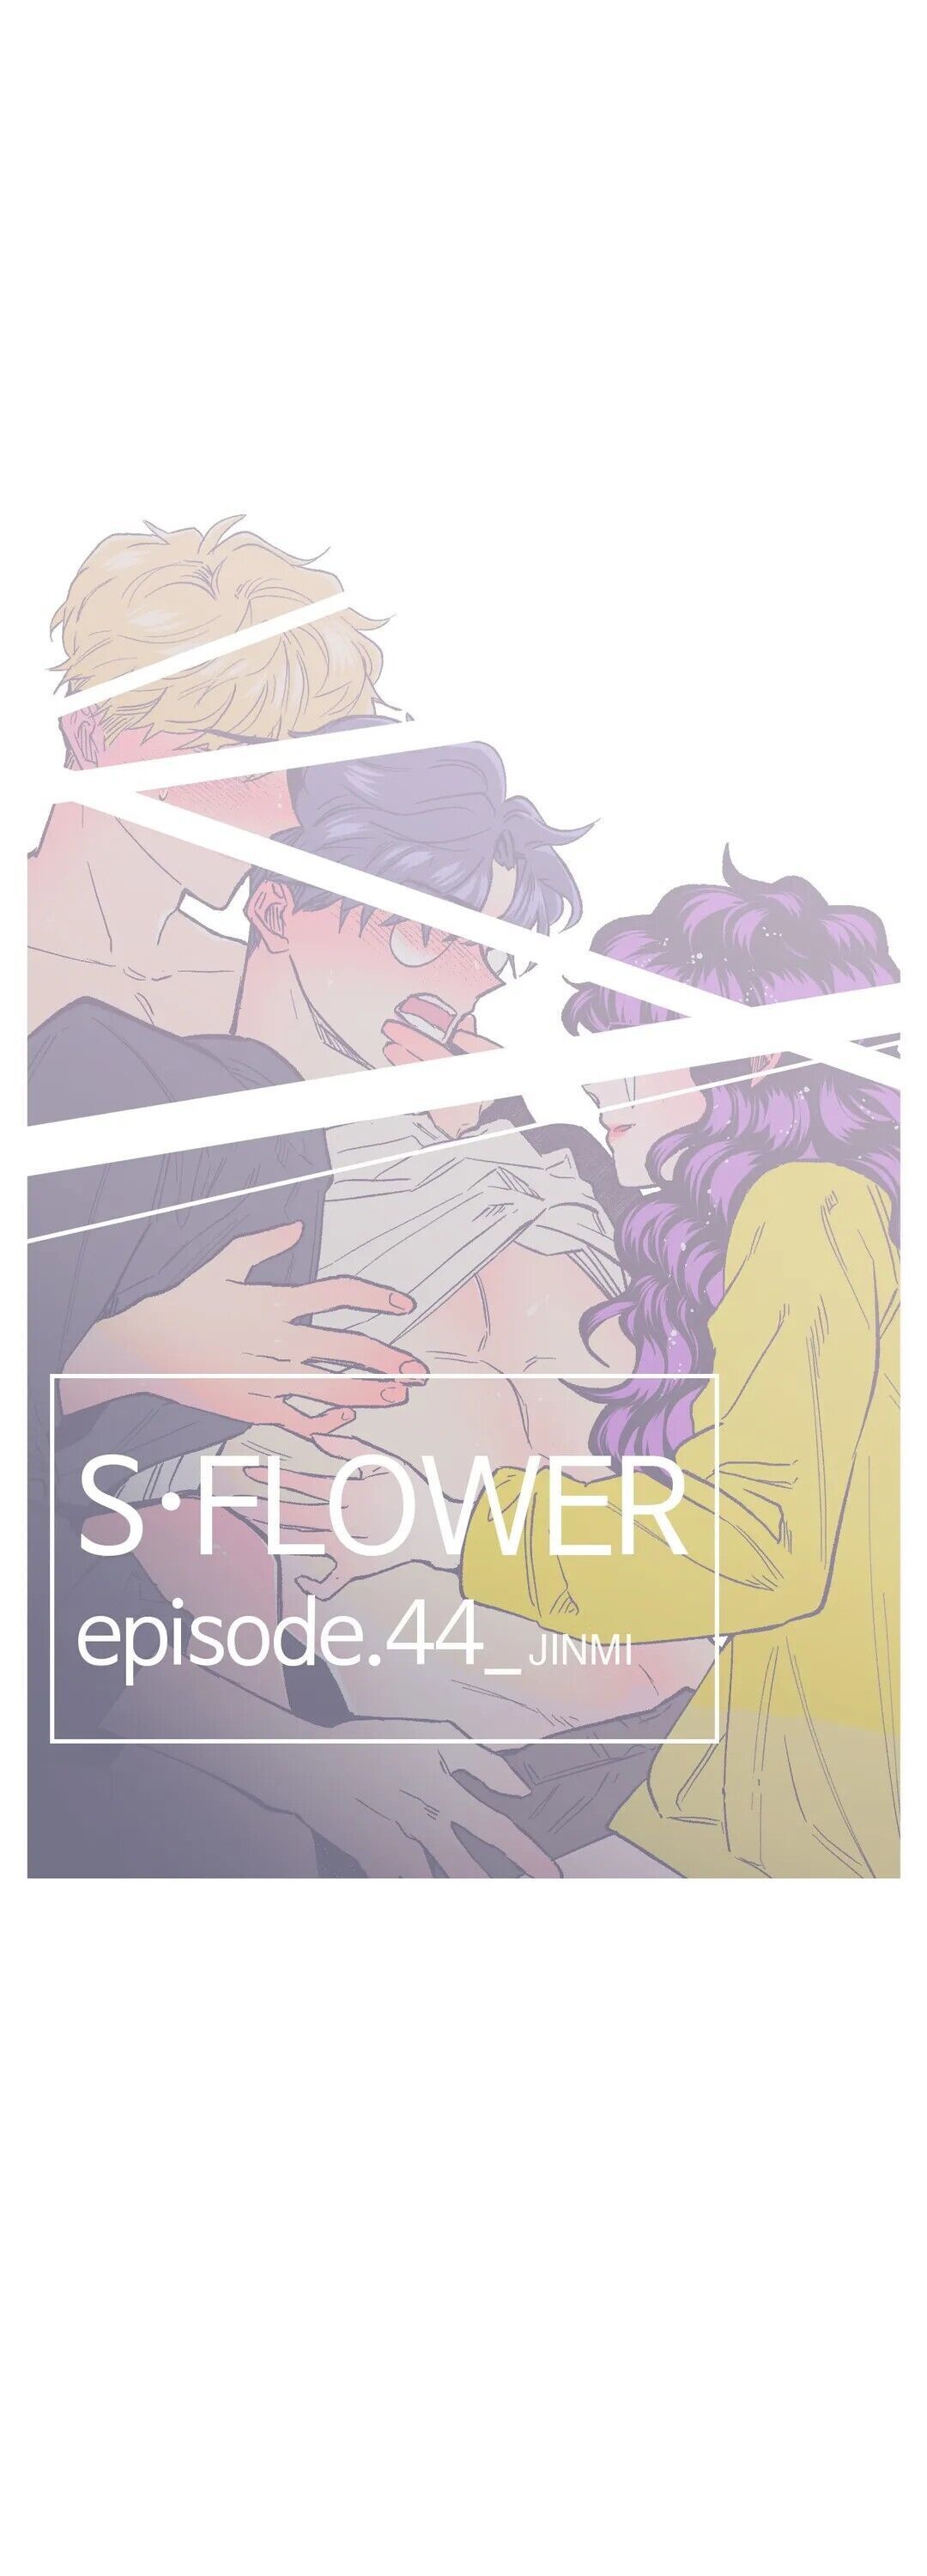 The image S Flower - Chapter 44 - yRBRbx4Erz5eL6j - ManhwaManga.io